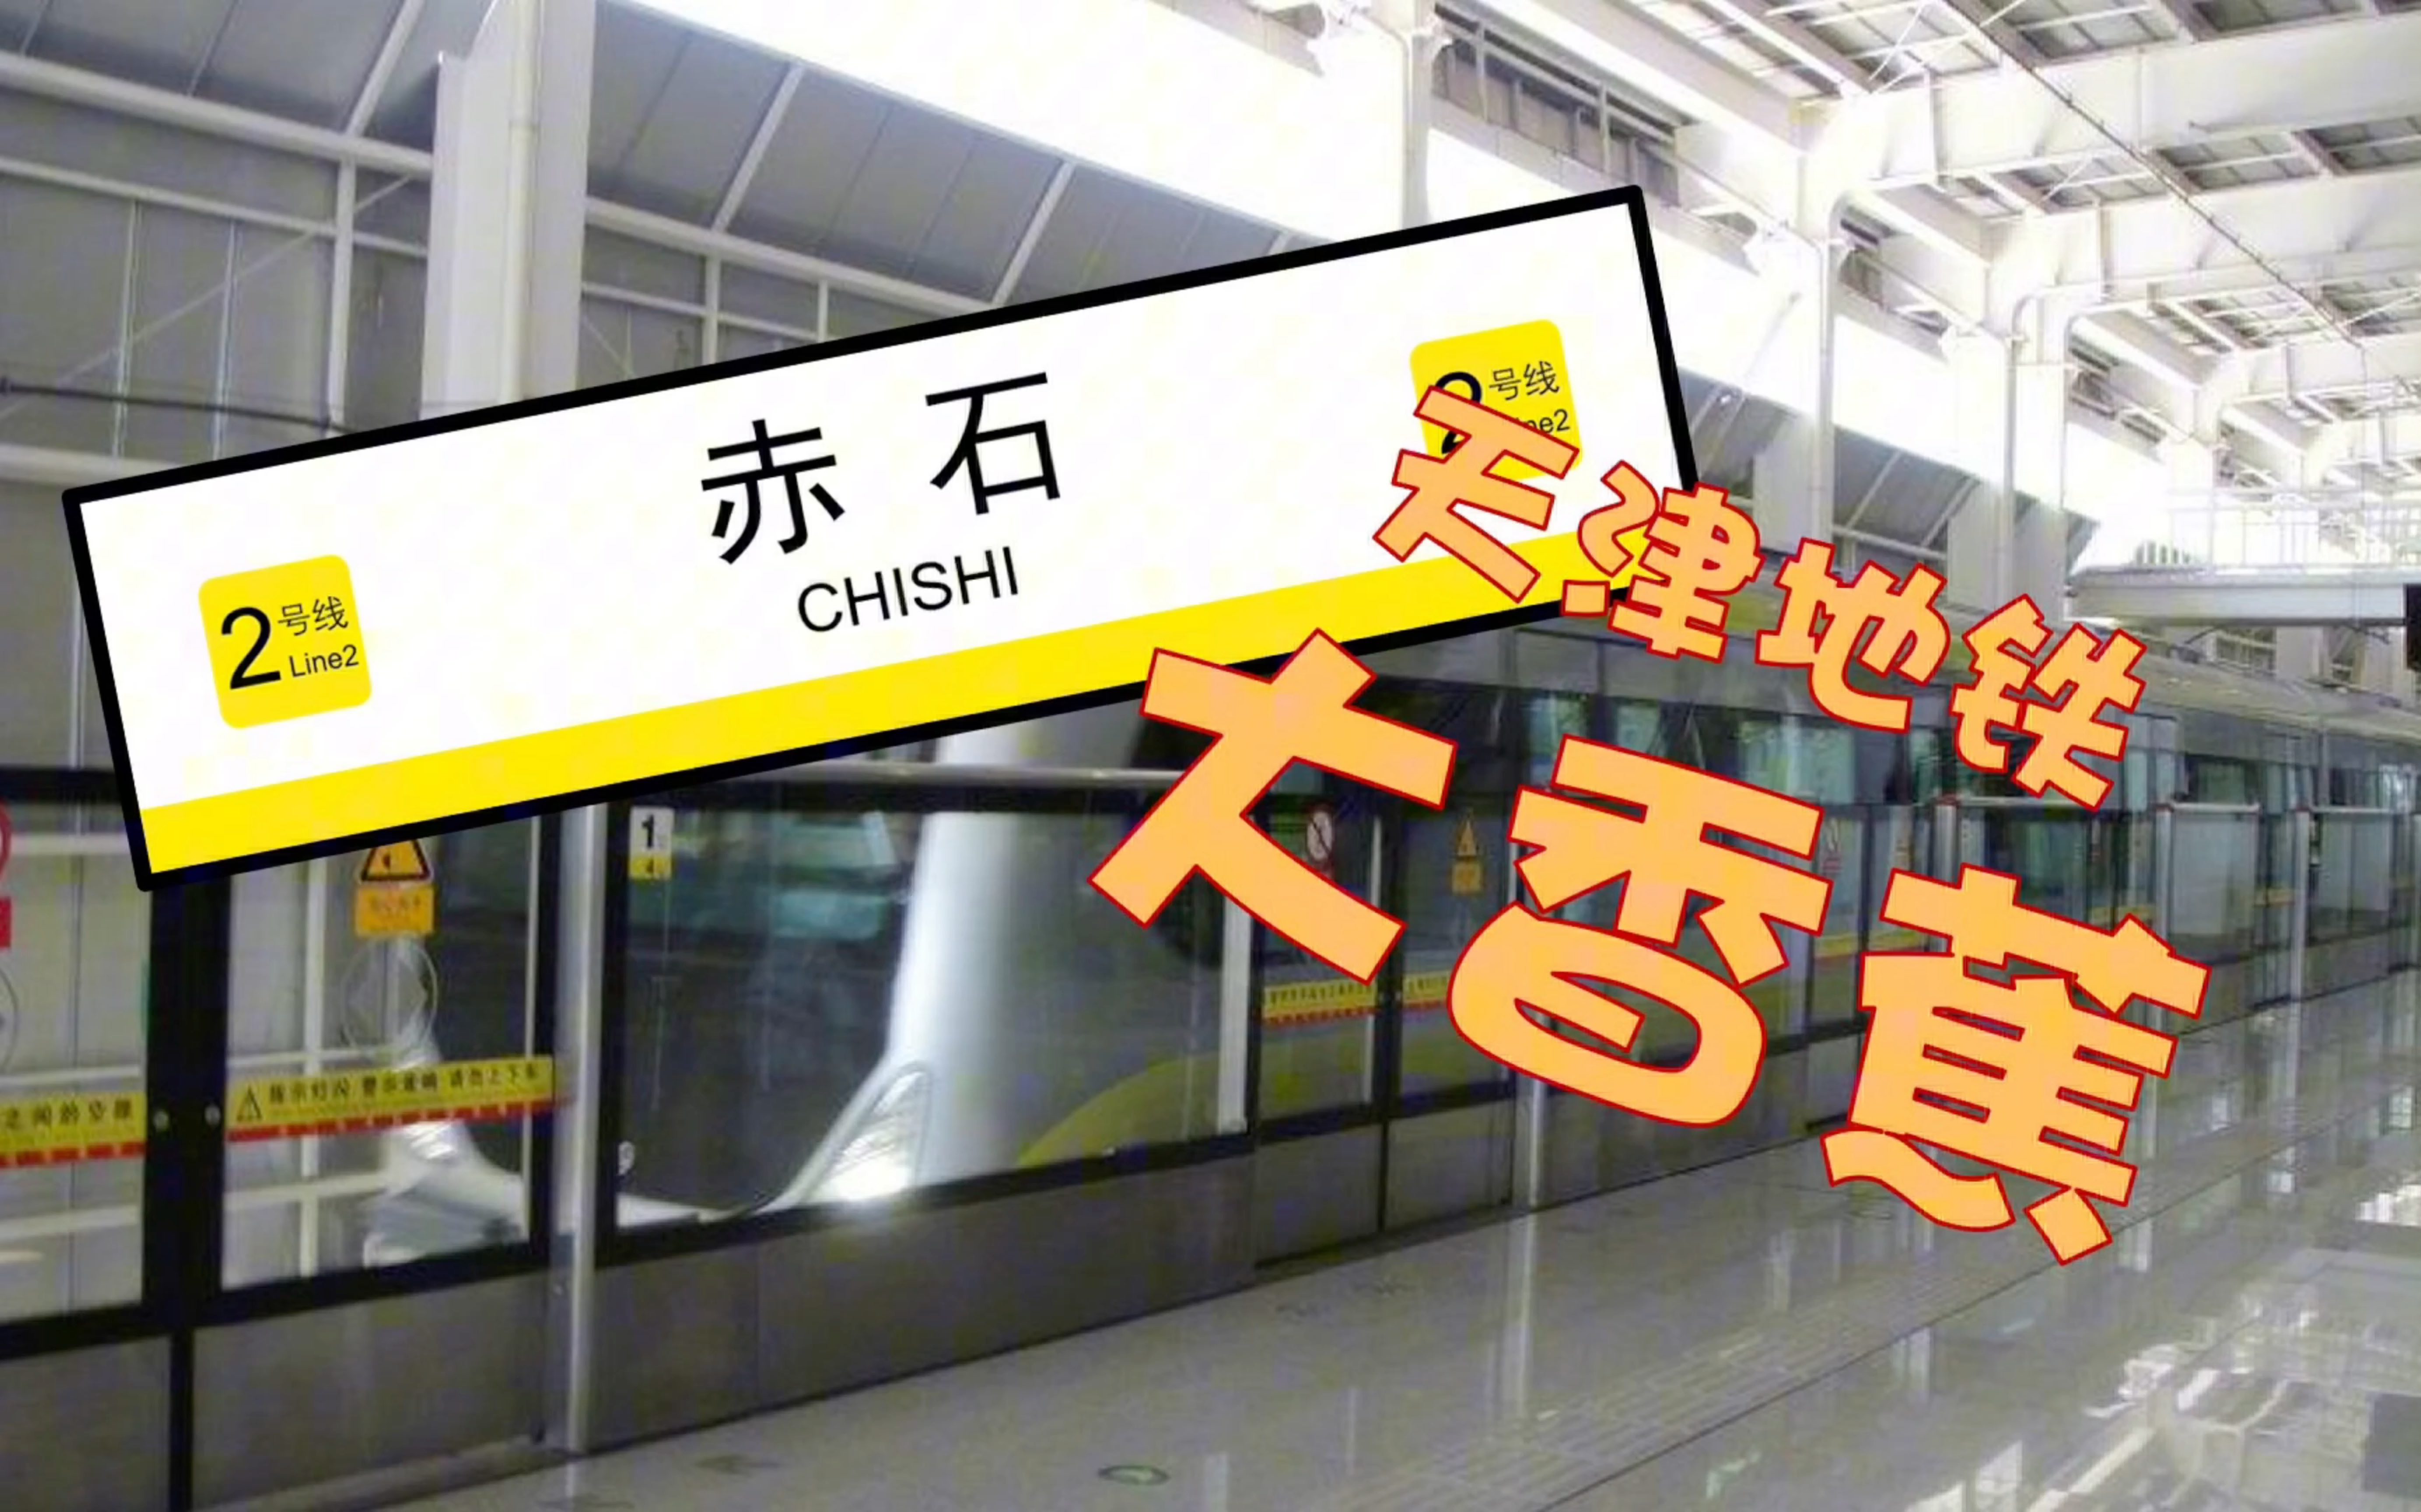 【天津地铁音MAD】大！香！蕉！一！条！大！香！蕉！